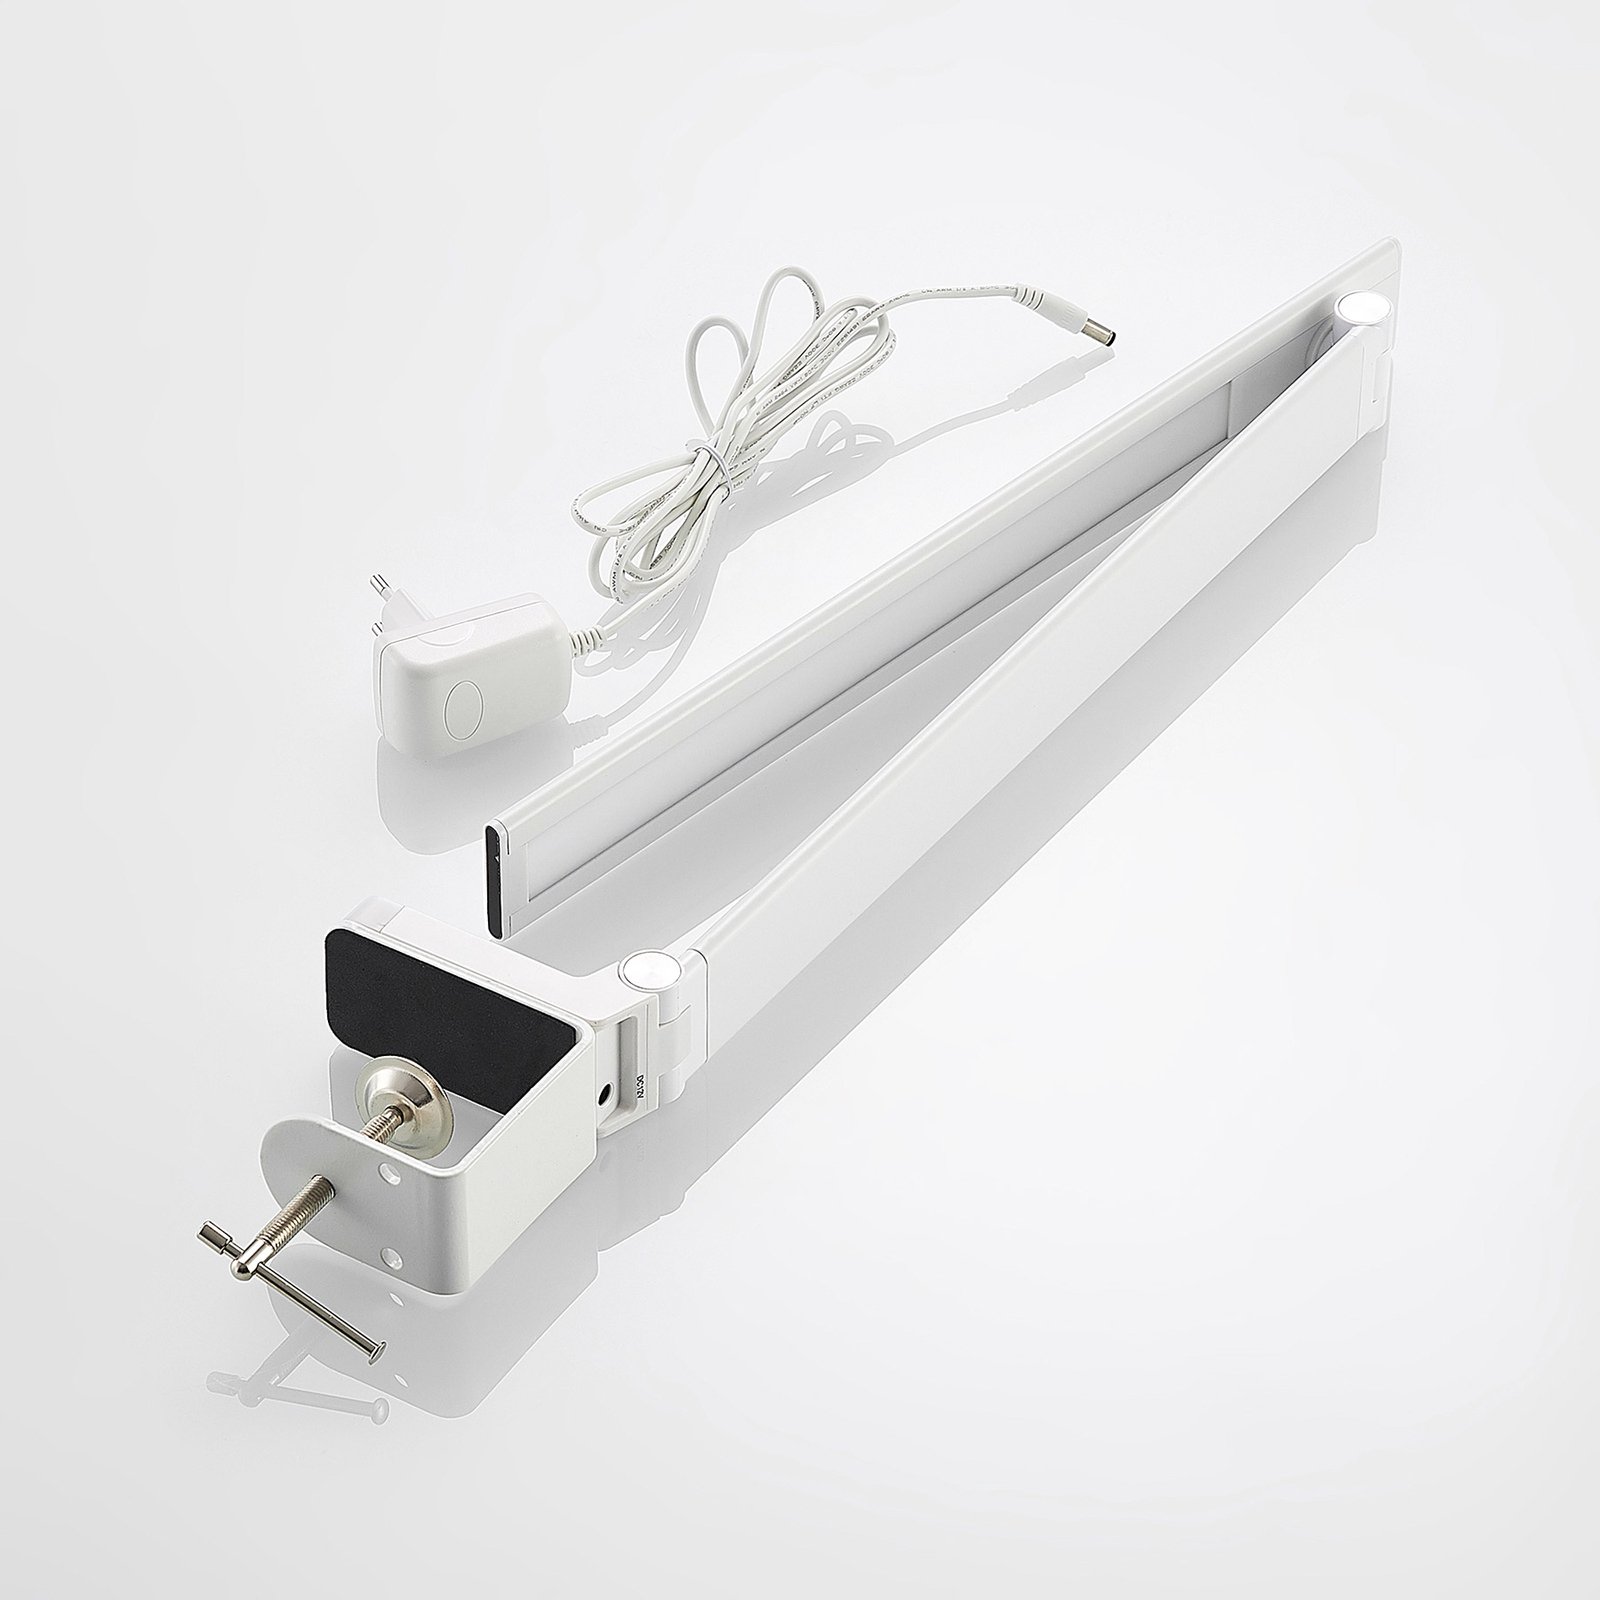 Prios Tamarin-LED-pöytälamppu himmennys, valkoinen